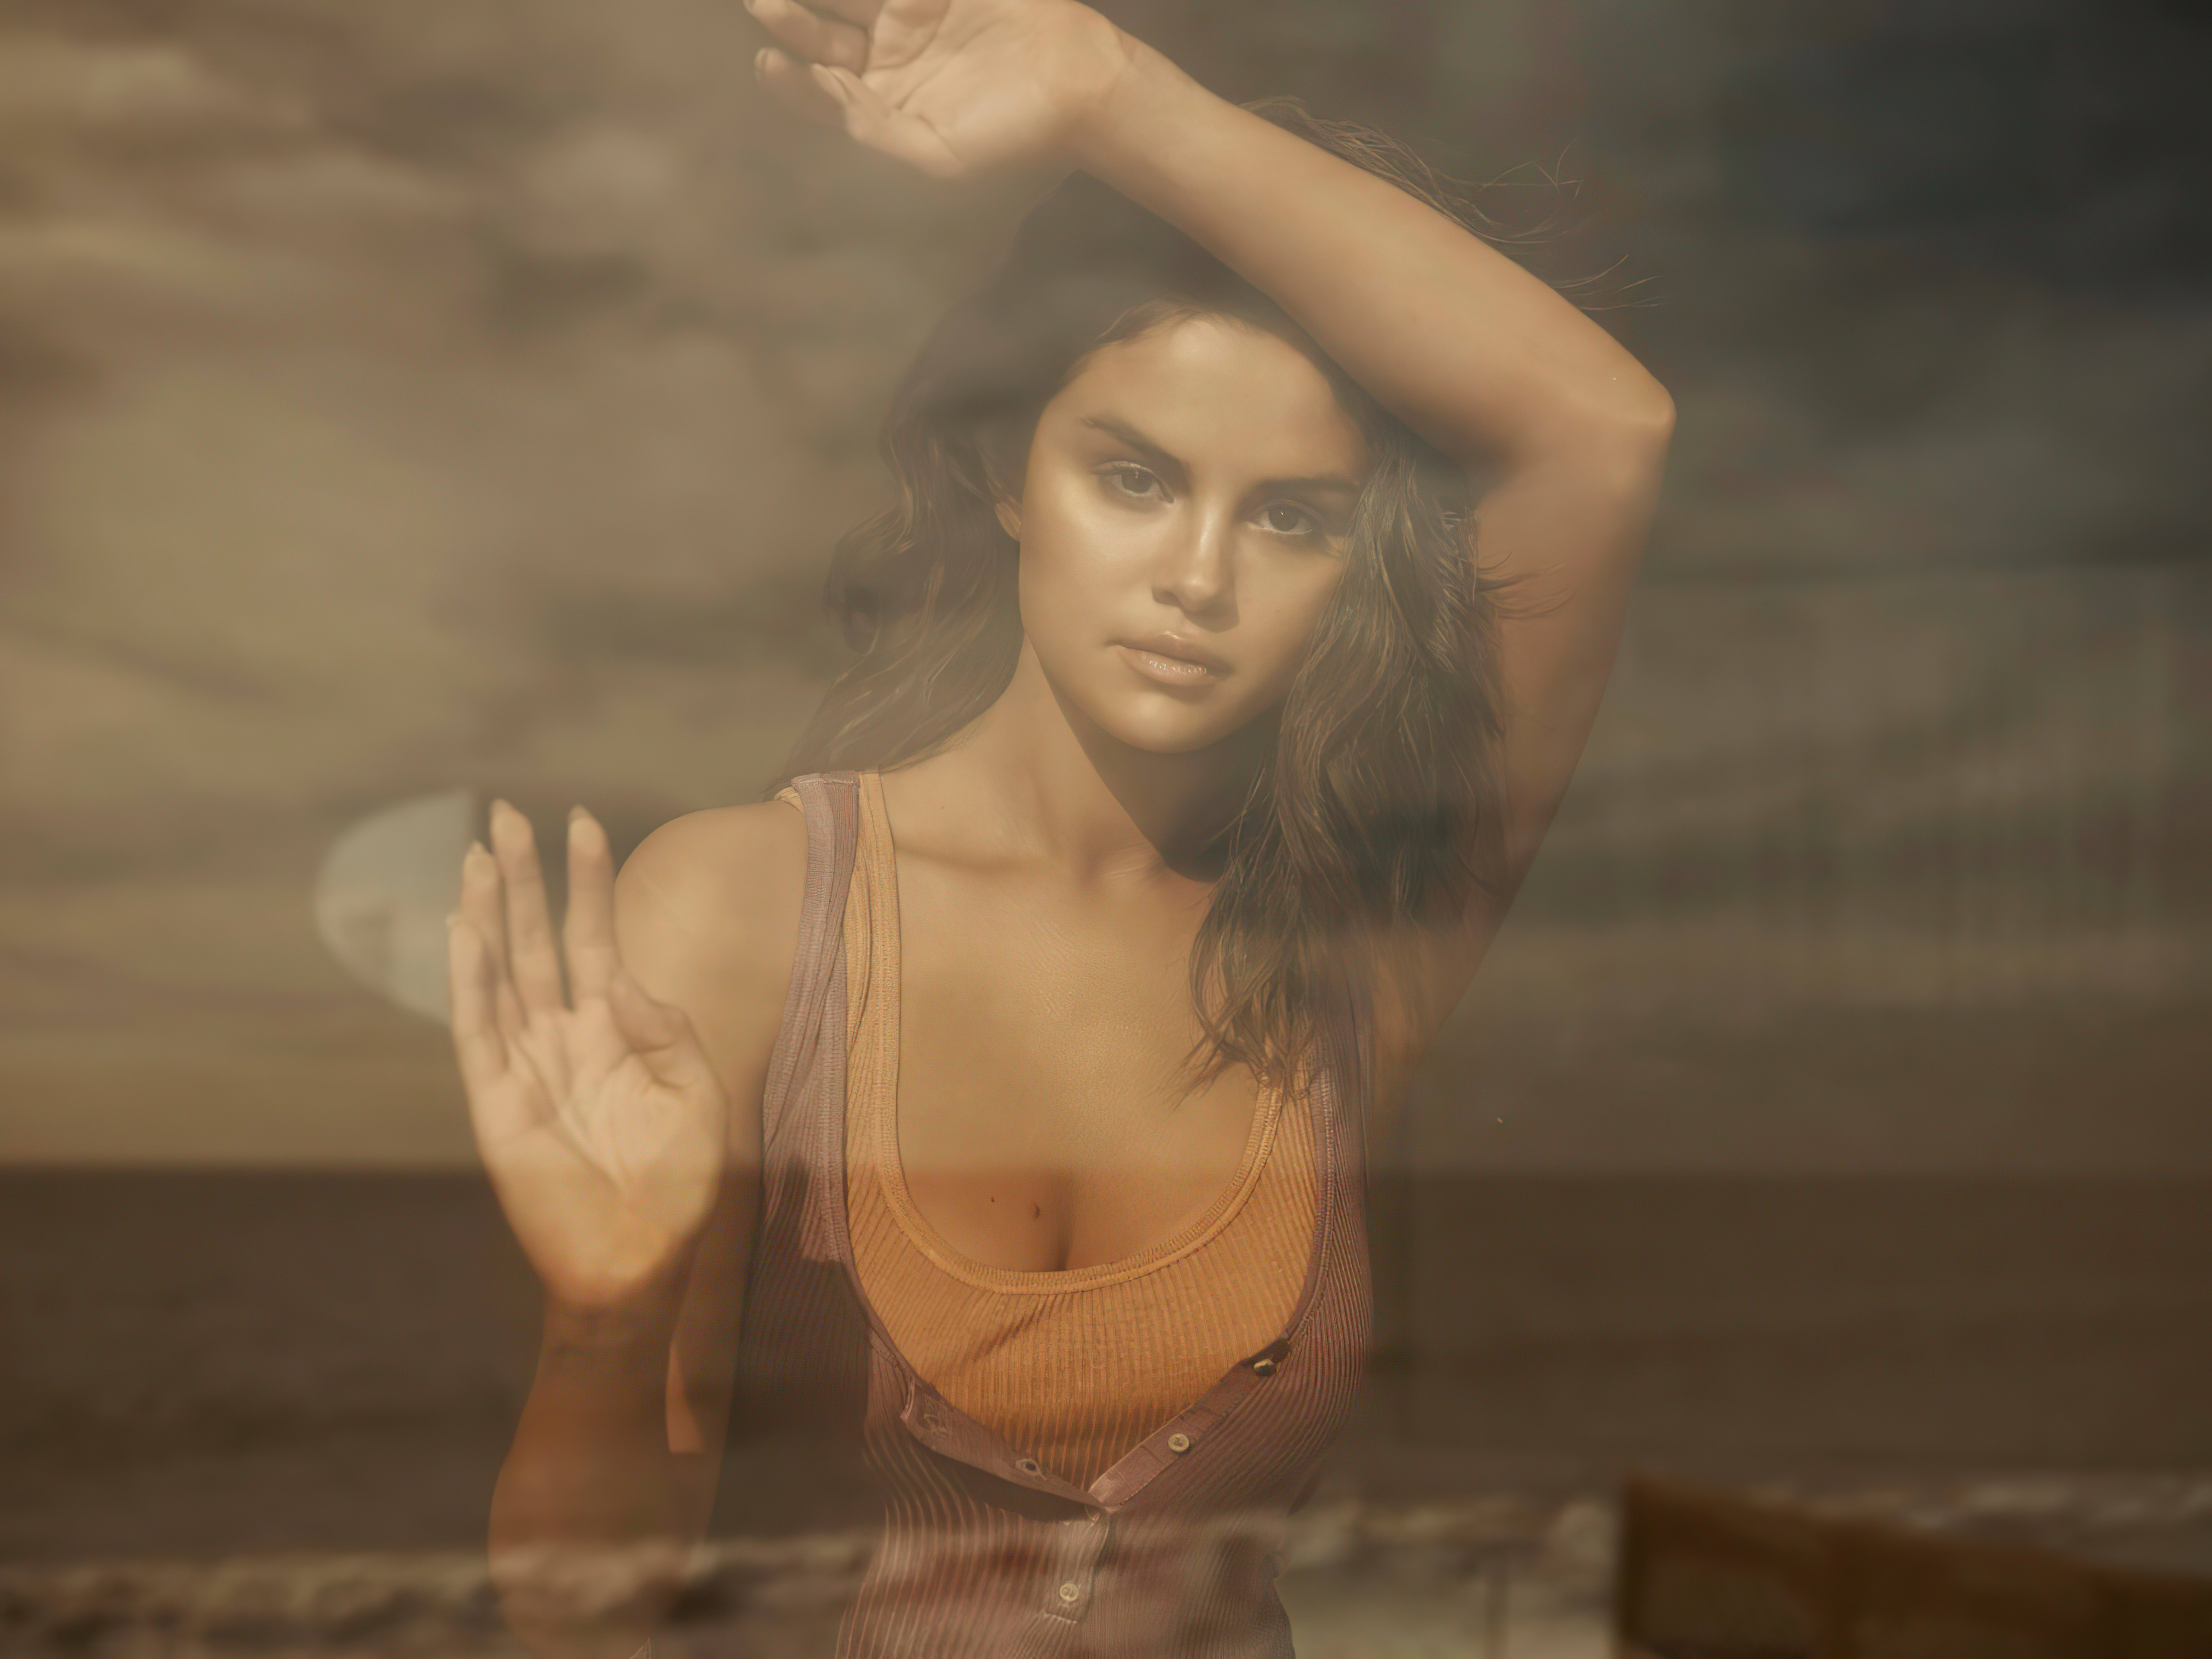 Fondos de pantalla Selena Gomez para revista